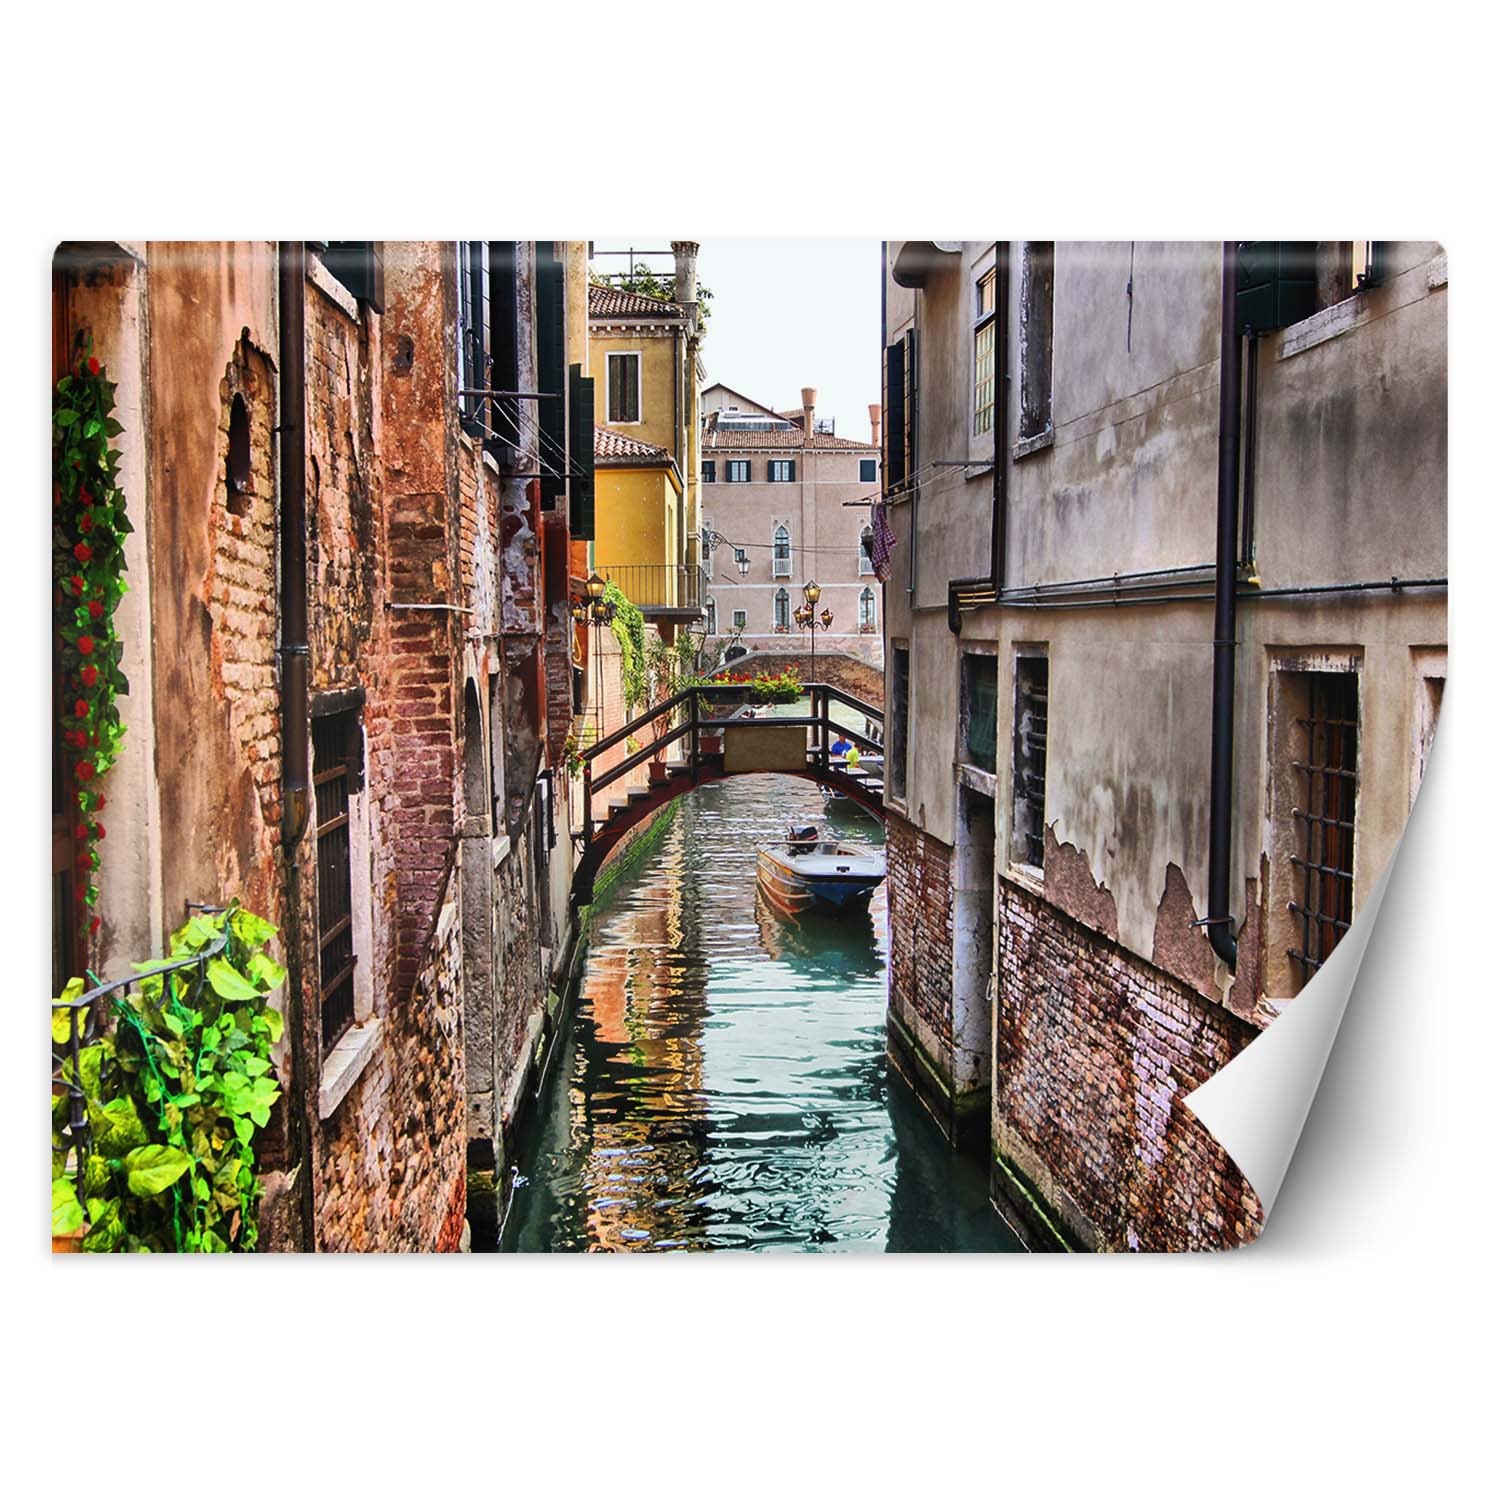 Trend24 – Behang – Venetië – Behangpapier – Fotobehang – Behang Woonkamer – 250x175x2 cm – Incl. behanglijm